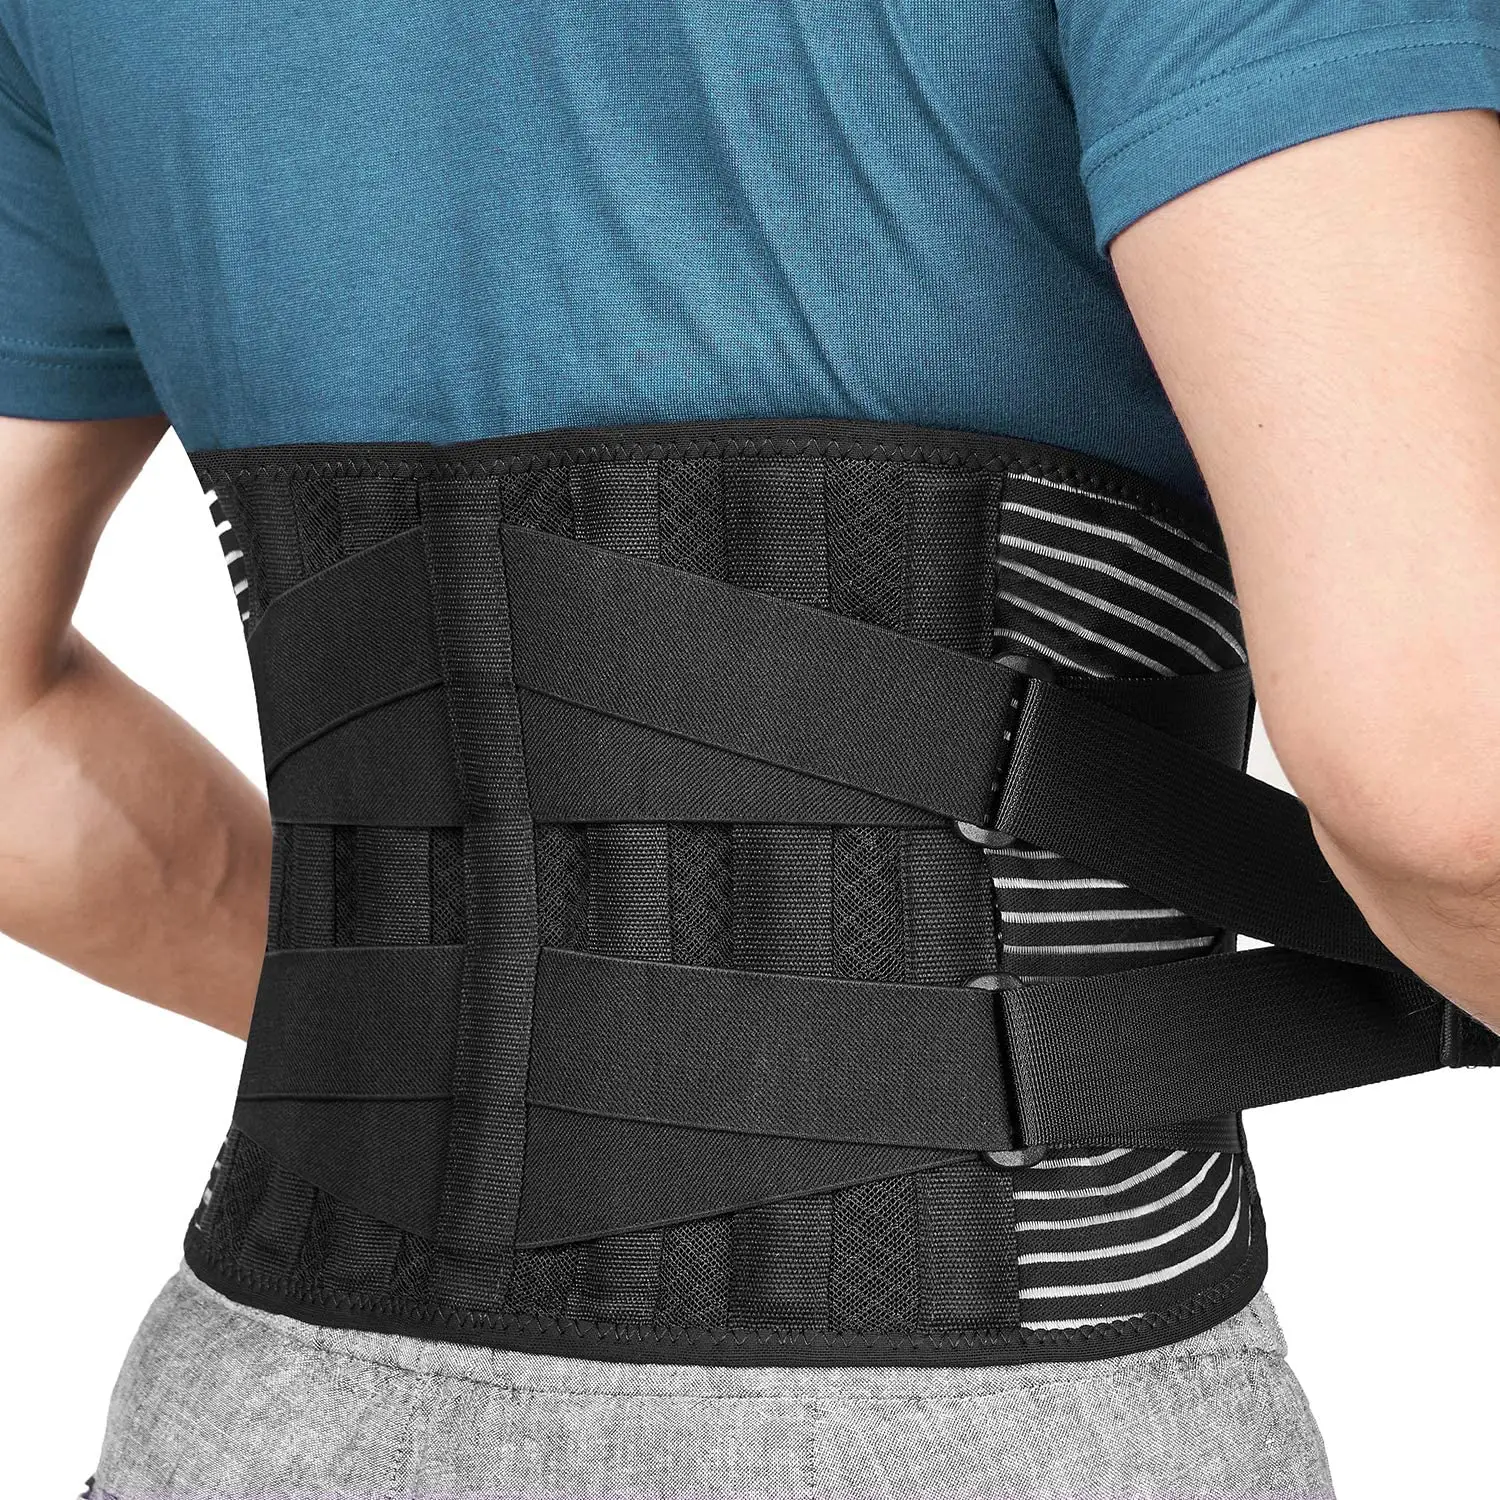 Новая поясничная поддержка Ортопедическая спинка для облегчения боли в спине Поддержка вытягивания поясничной части спины для поясницы